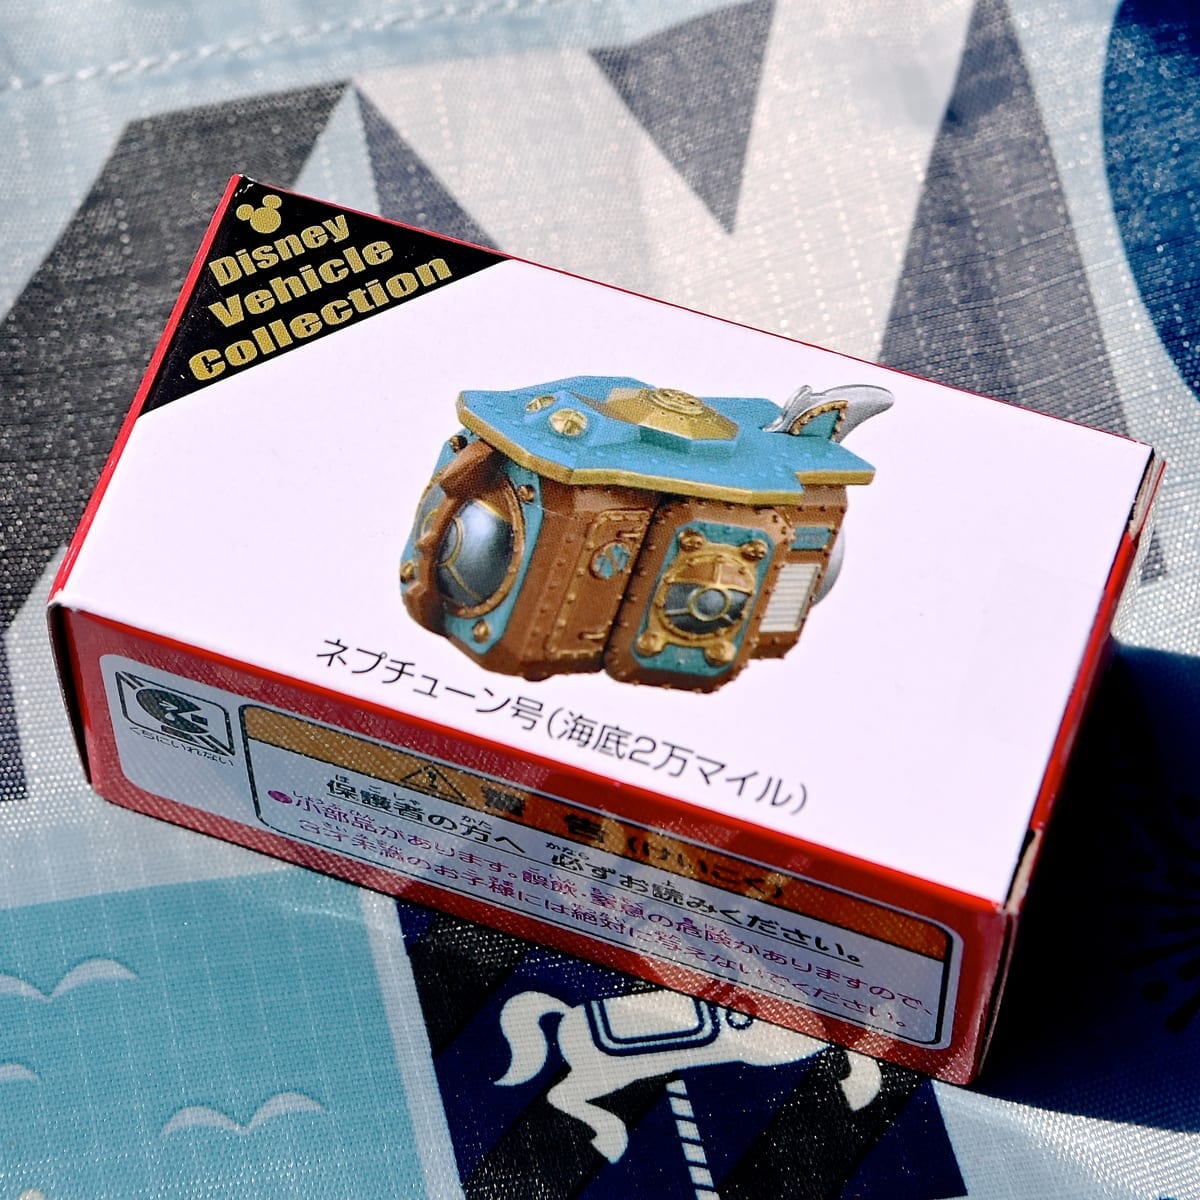 東京ディズニーリゾートヴィークルコレクション「海底2万マイル」箱